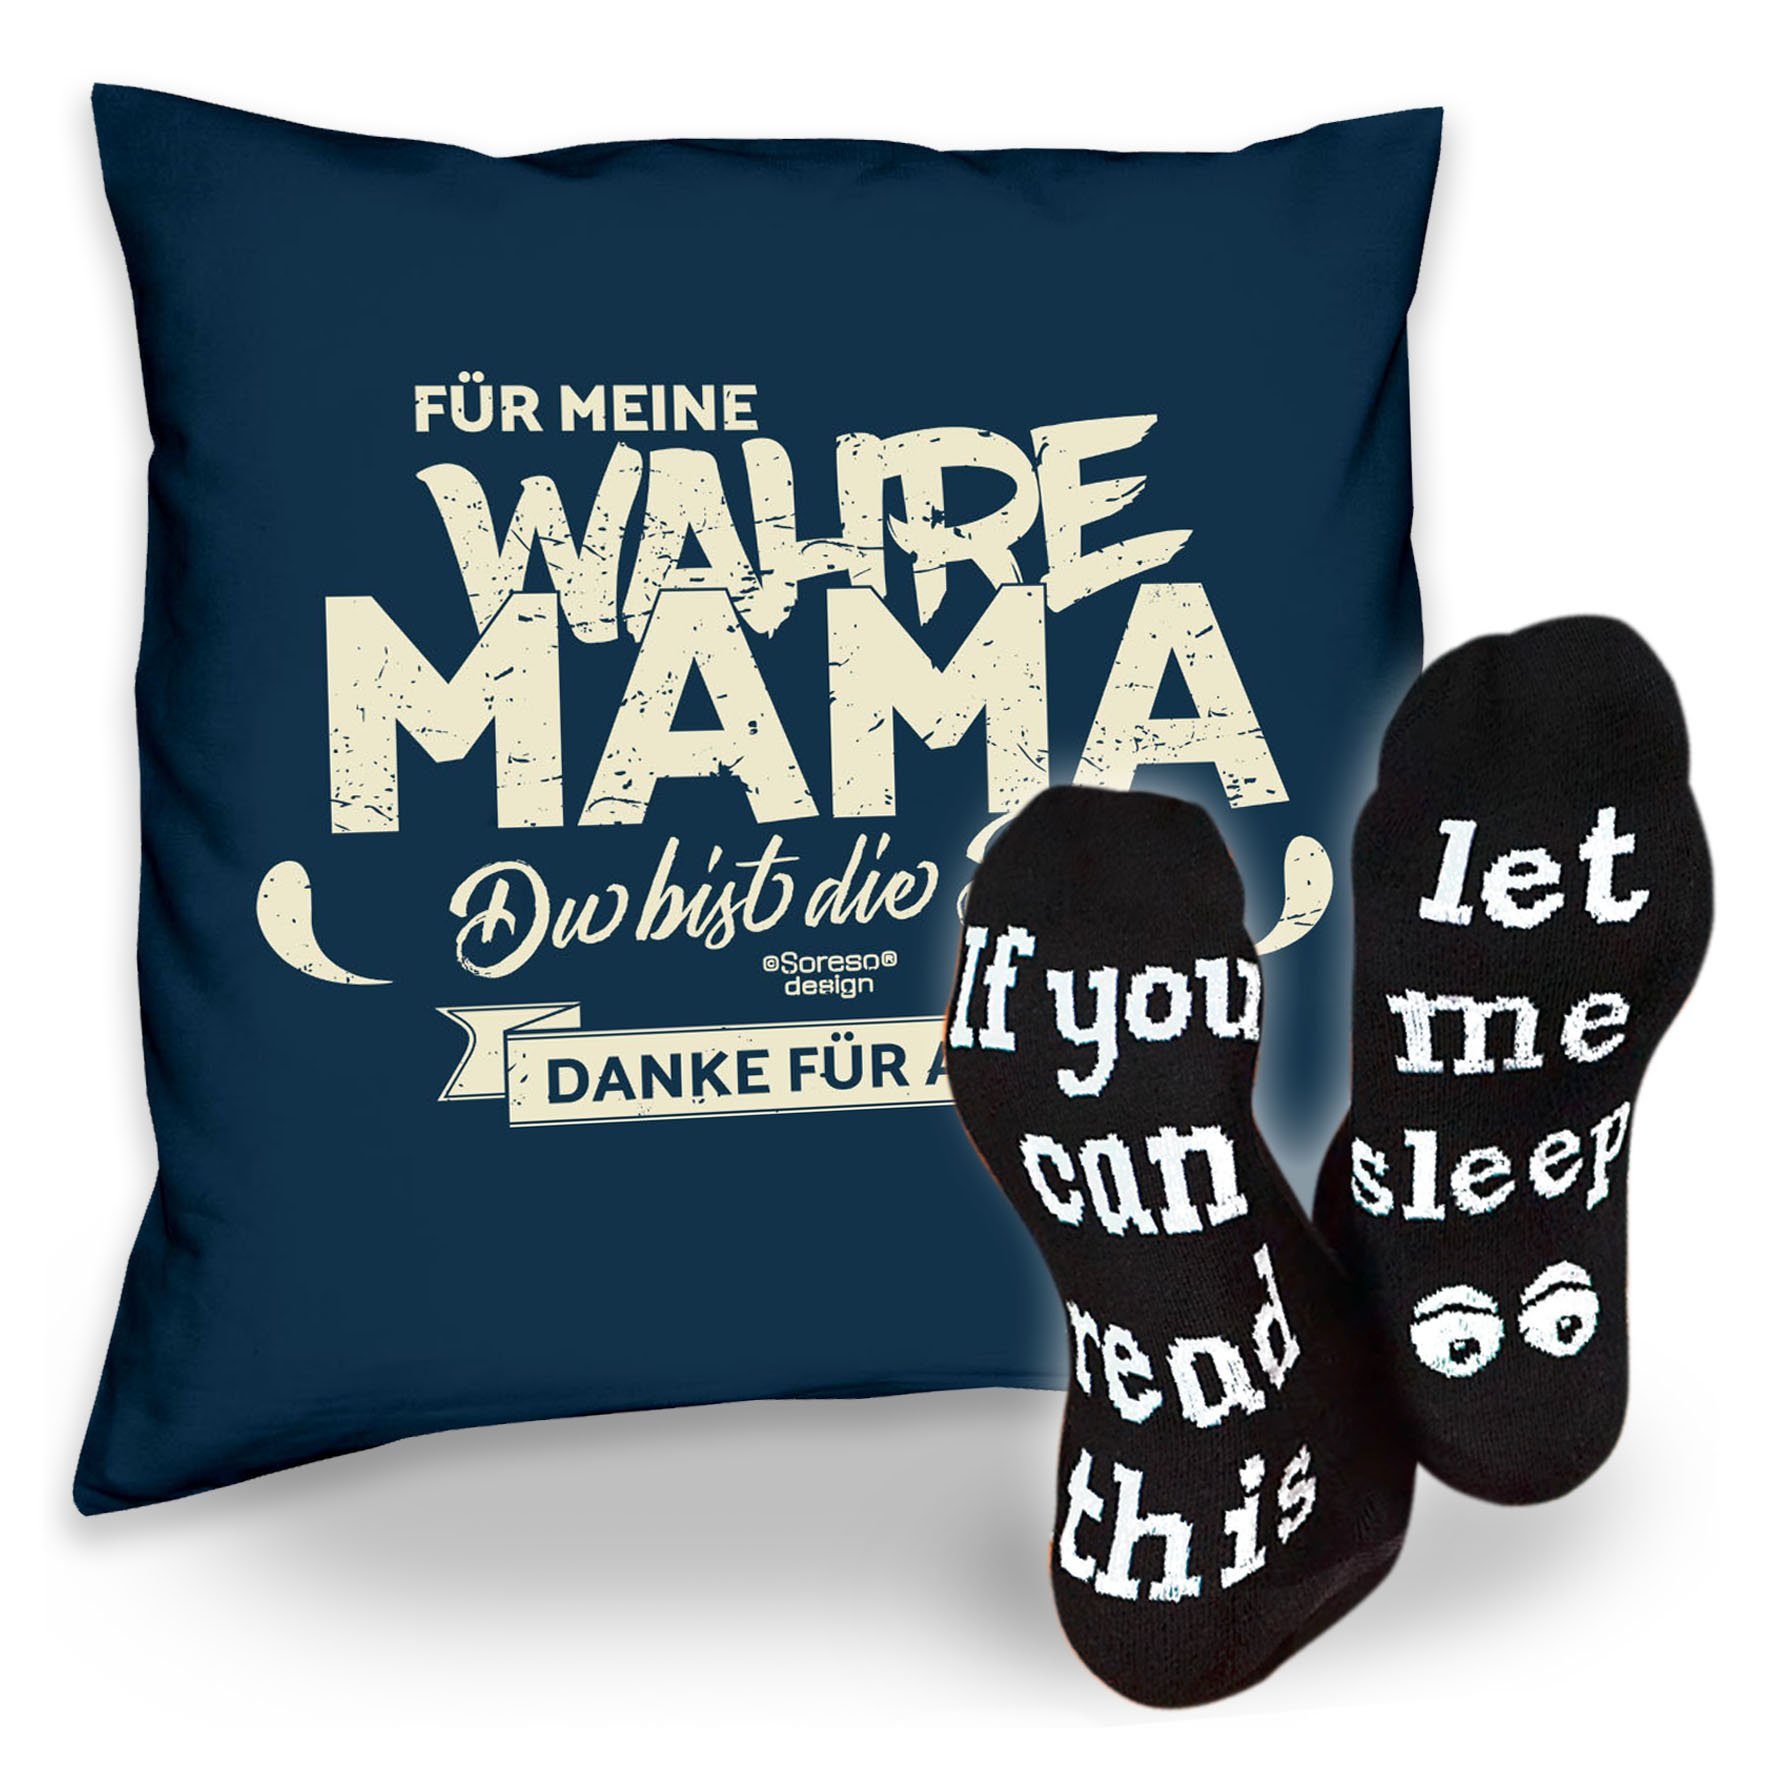 wahre navy-blau Mama Socken Dekokissen Sleep, Weihnachtsgeschenk Kissen Für Sprüche meine & Geschenkidee Soreso®